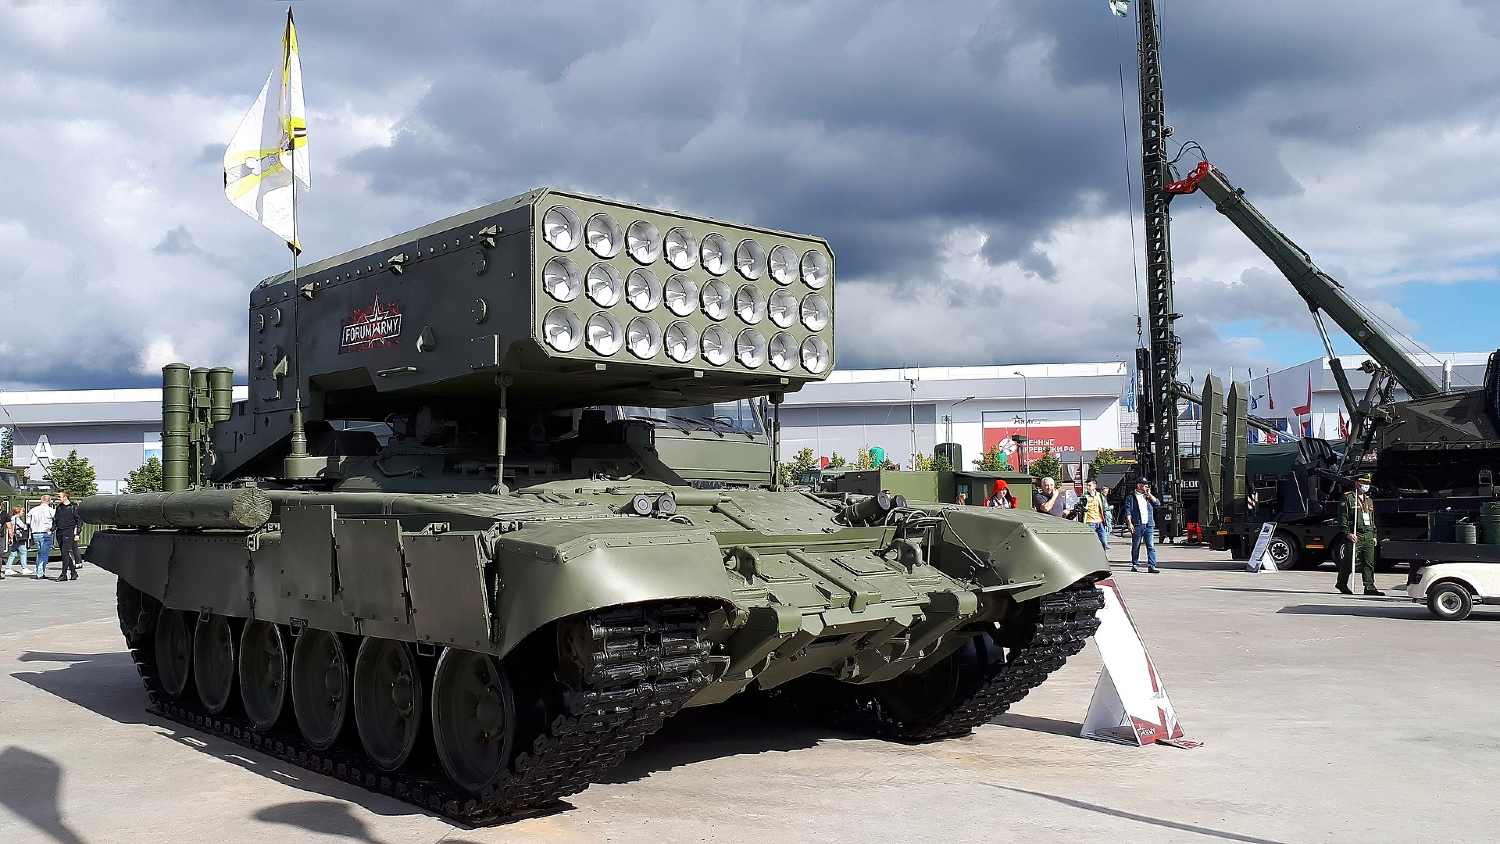 TOS-1A-Solntsepyok